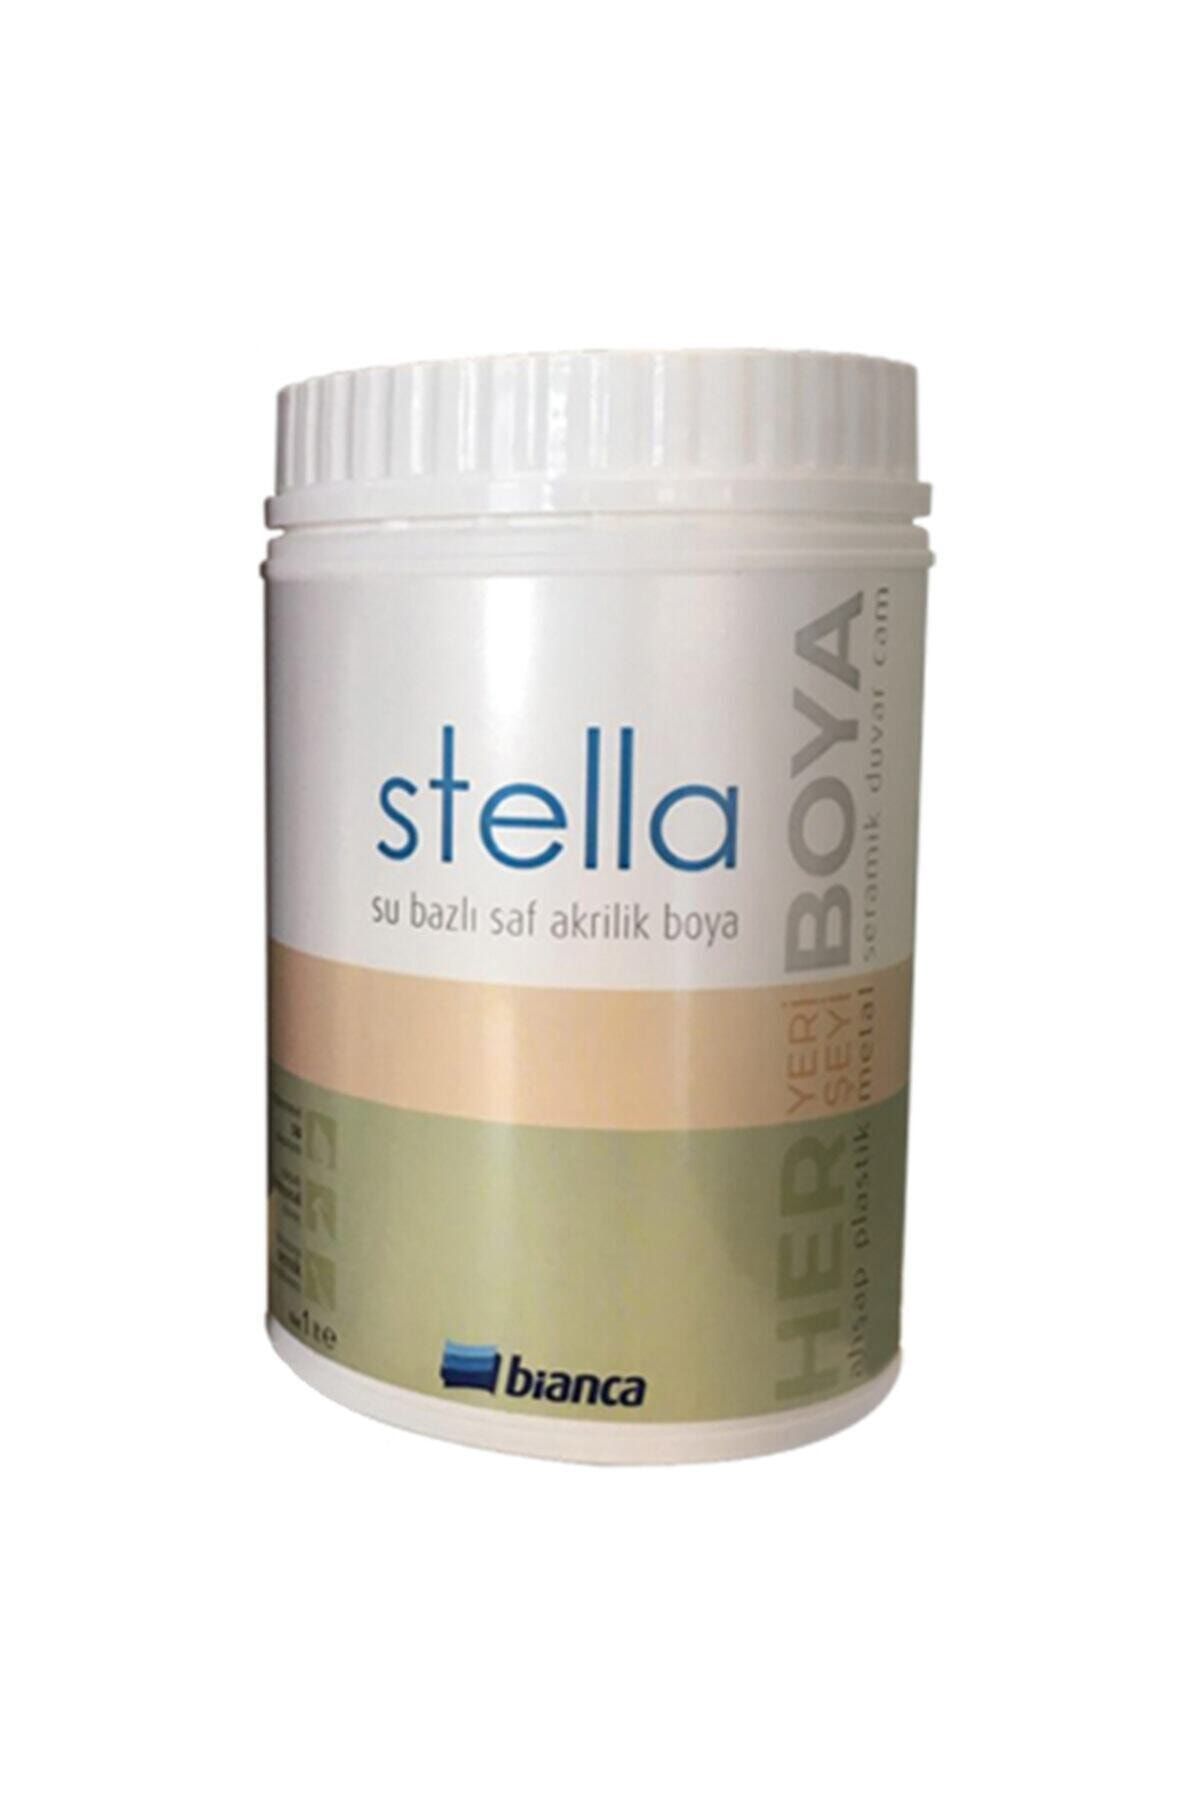 Bianca Stella Su Bazlı Saf Akrilik Boya-kırık Beyaz